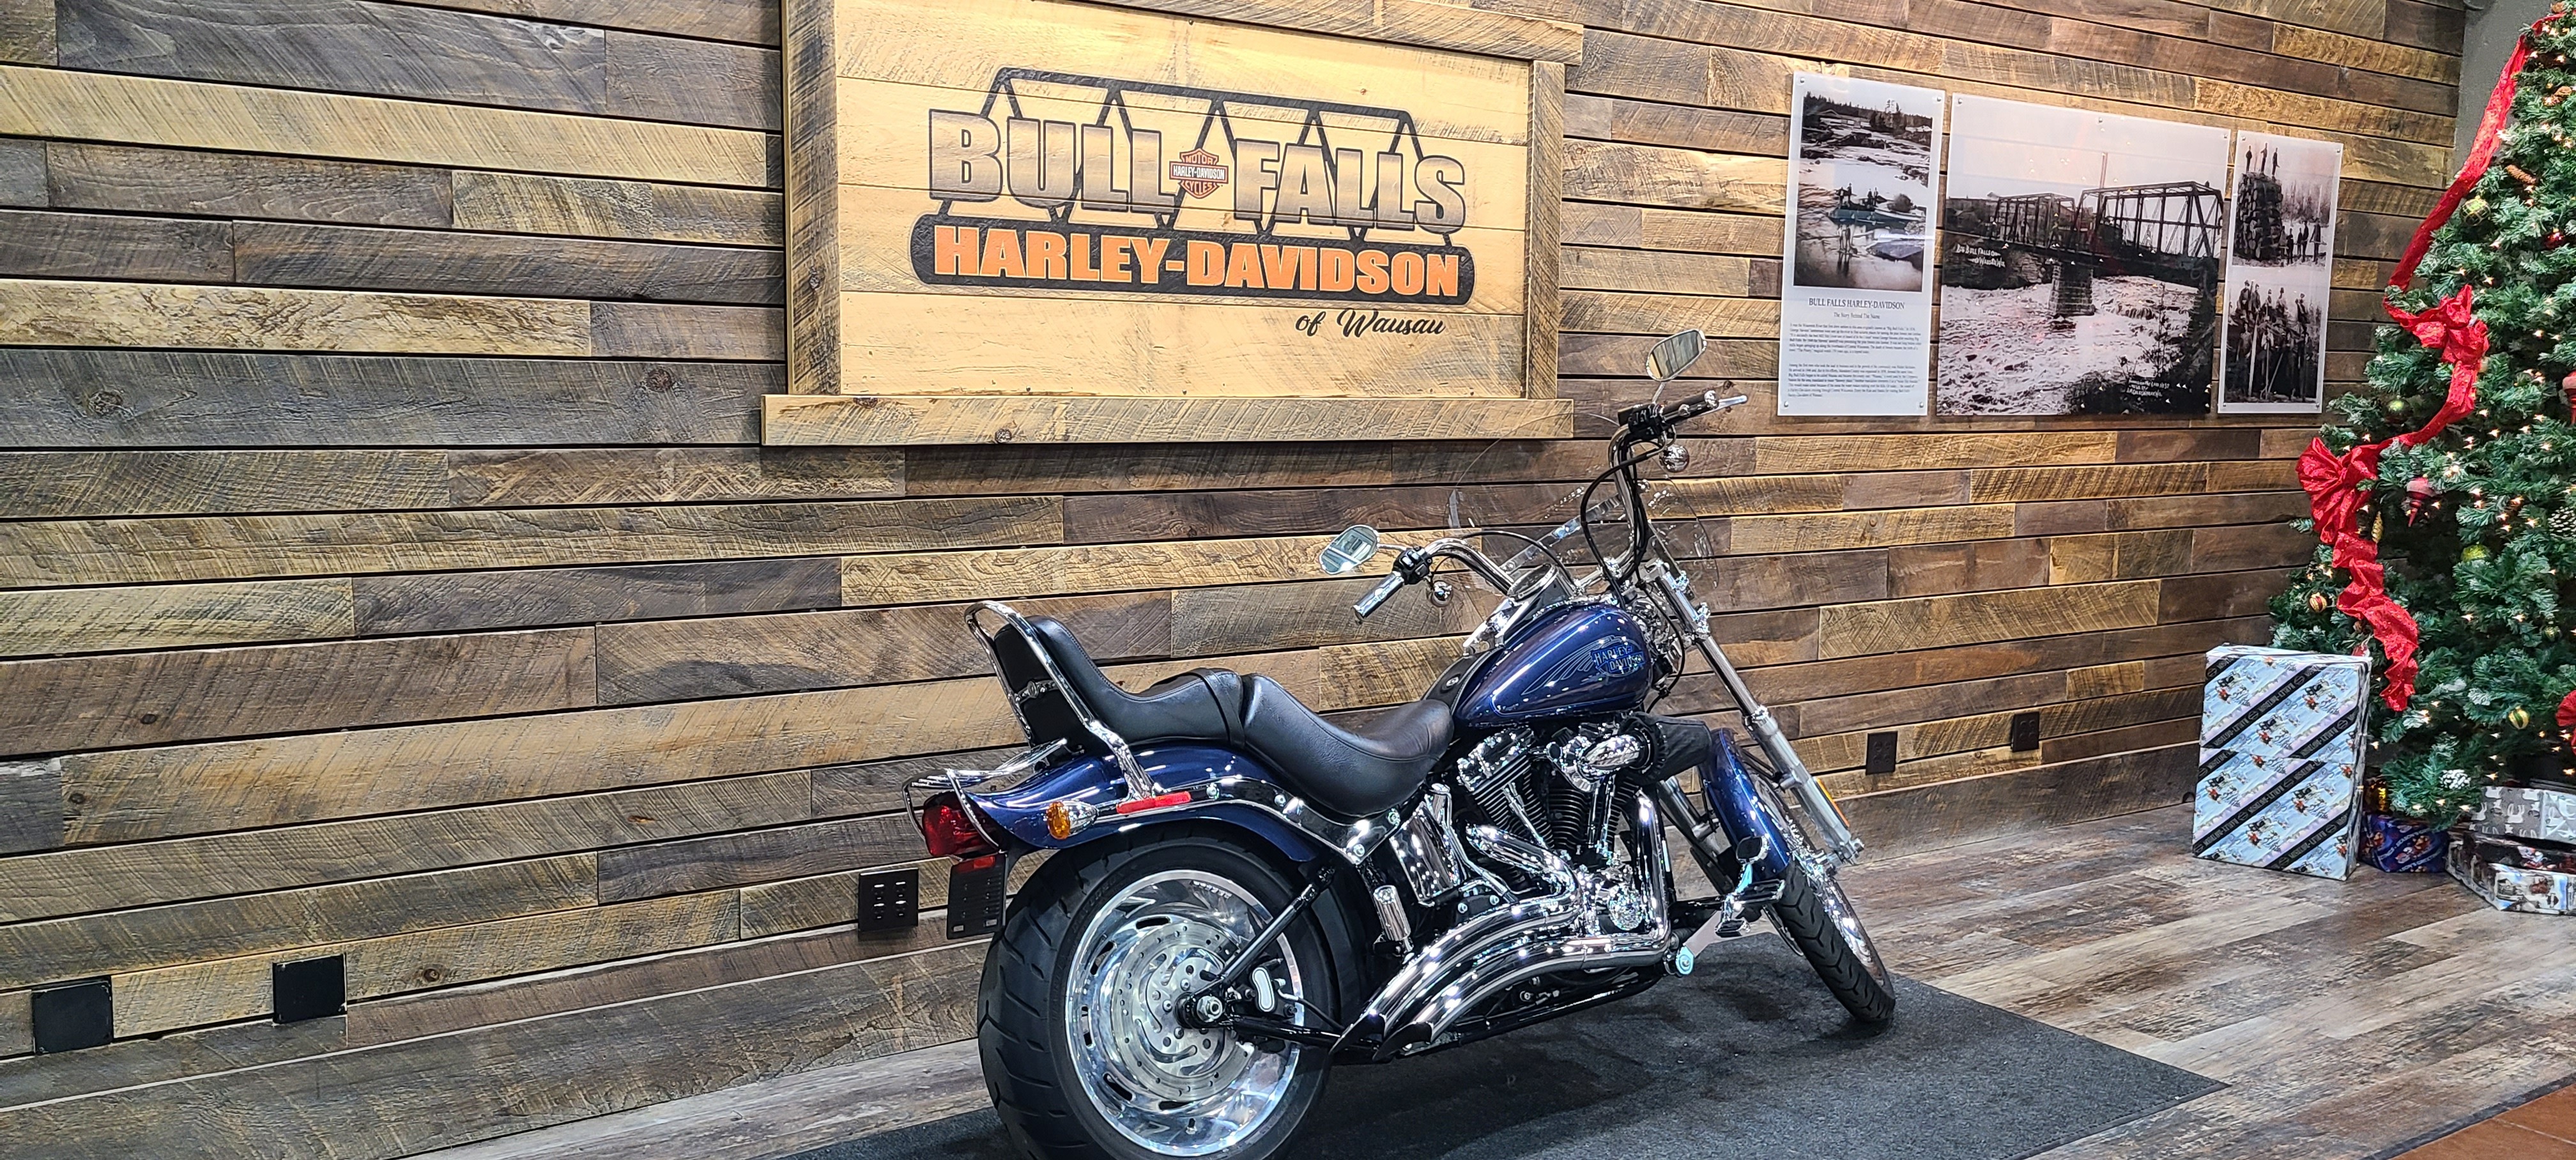 2008 Harley-Davidson Softail Custom at Bull Falls Harley-Davidson